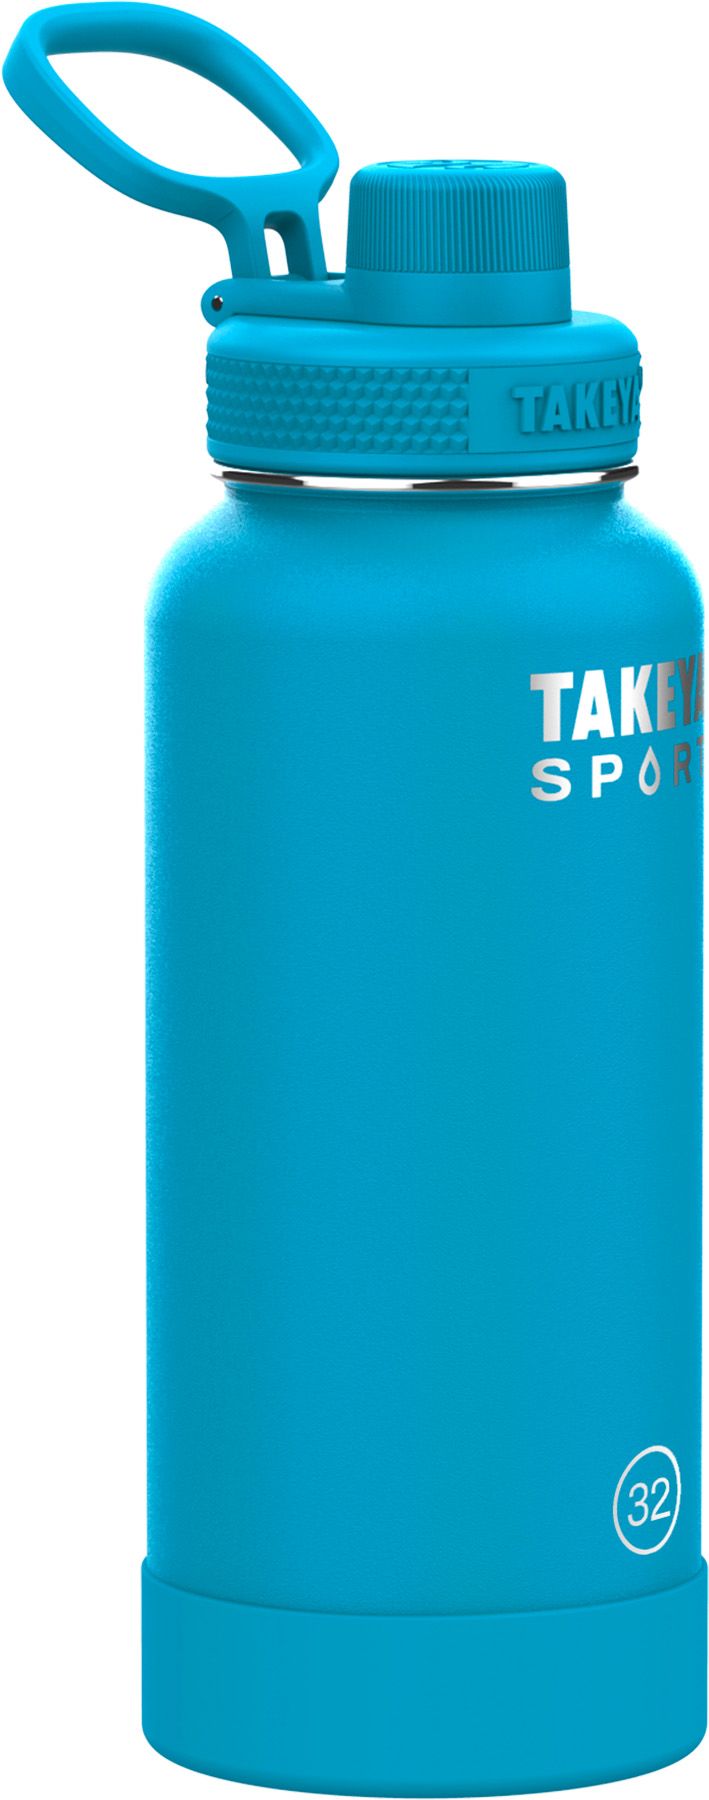 Takeya Sport 32 oz. Water Bottle with Spout Lid